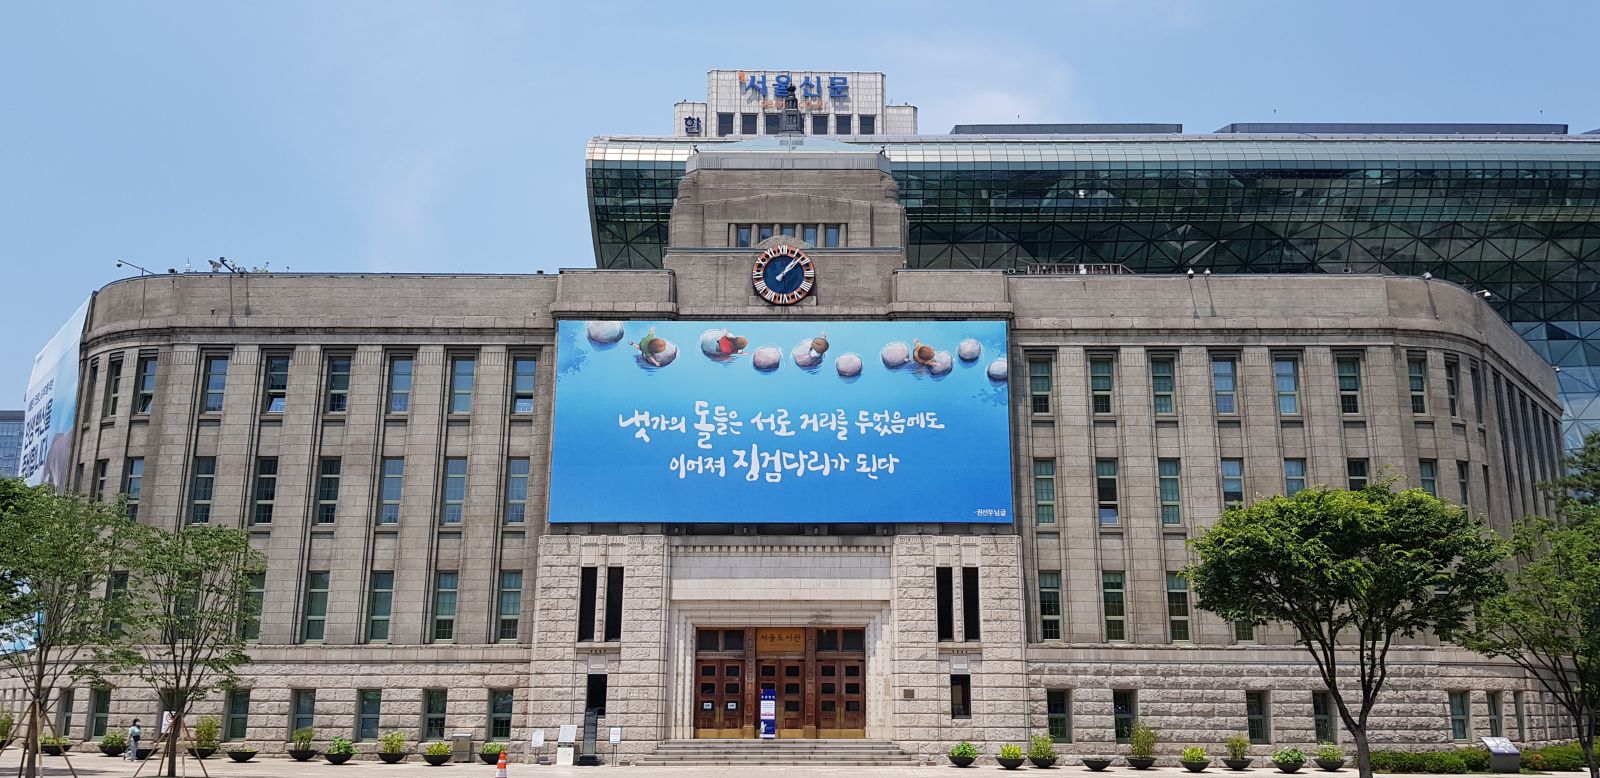 서울도서관 전경사진 - 냇가의 돌들은 서로 거리를 두었음에도, 이어져 징검다리가 된다 1